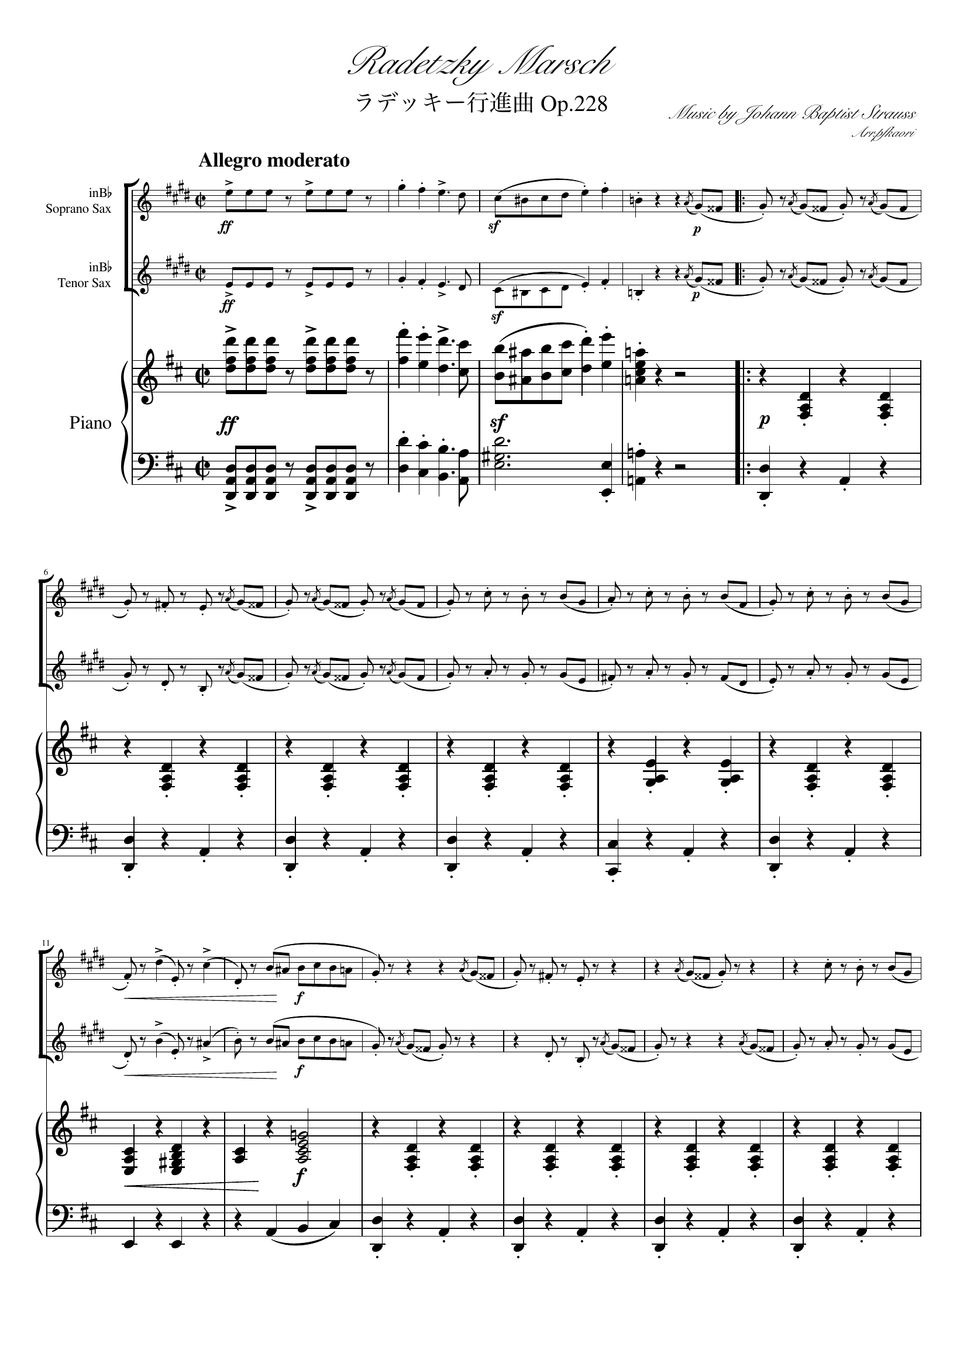 ヨハンシュトラウス1世 - ラデッキー行進曲 (D・ピアノトリオ/ソプラノサックス&テナーサックス) by pfkaori